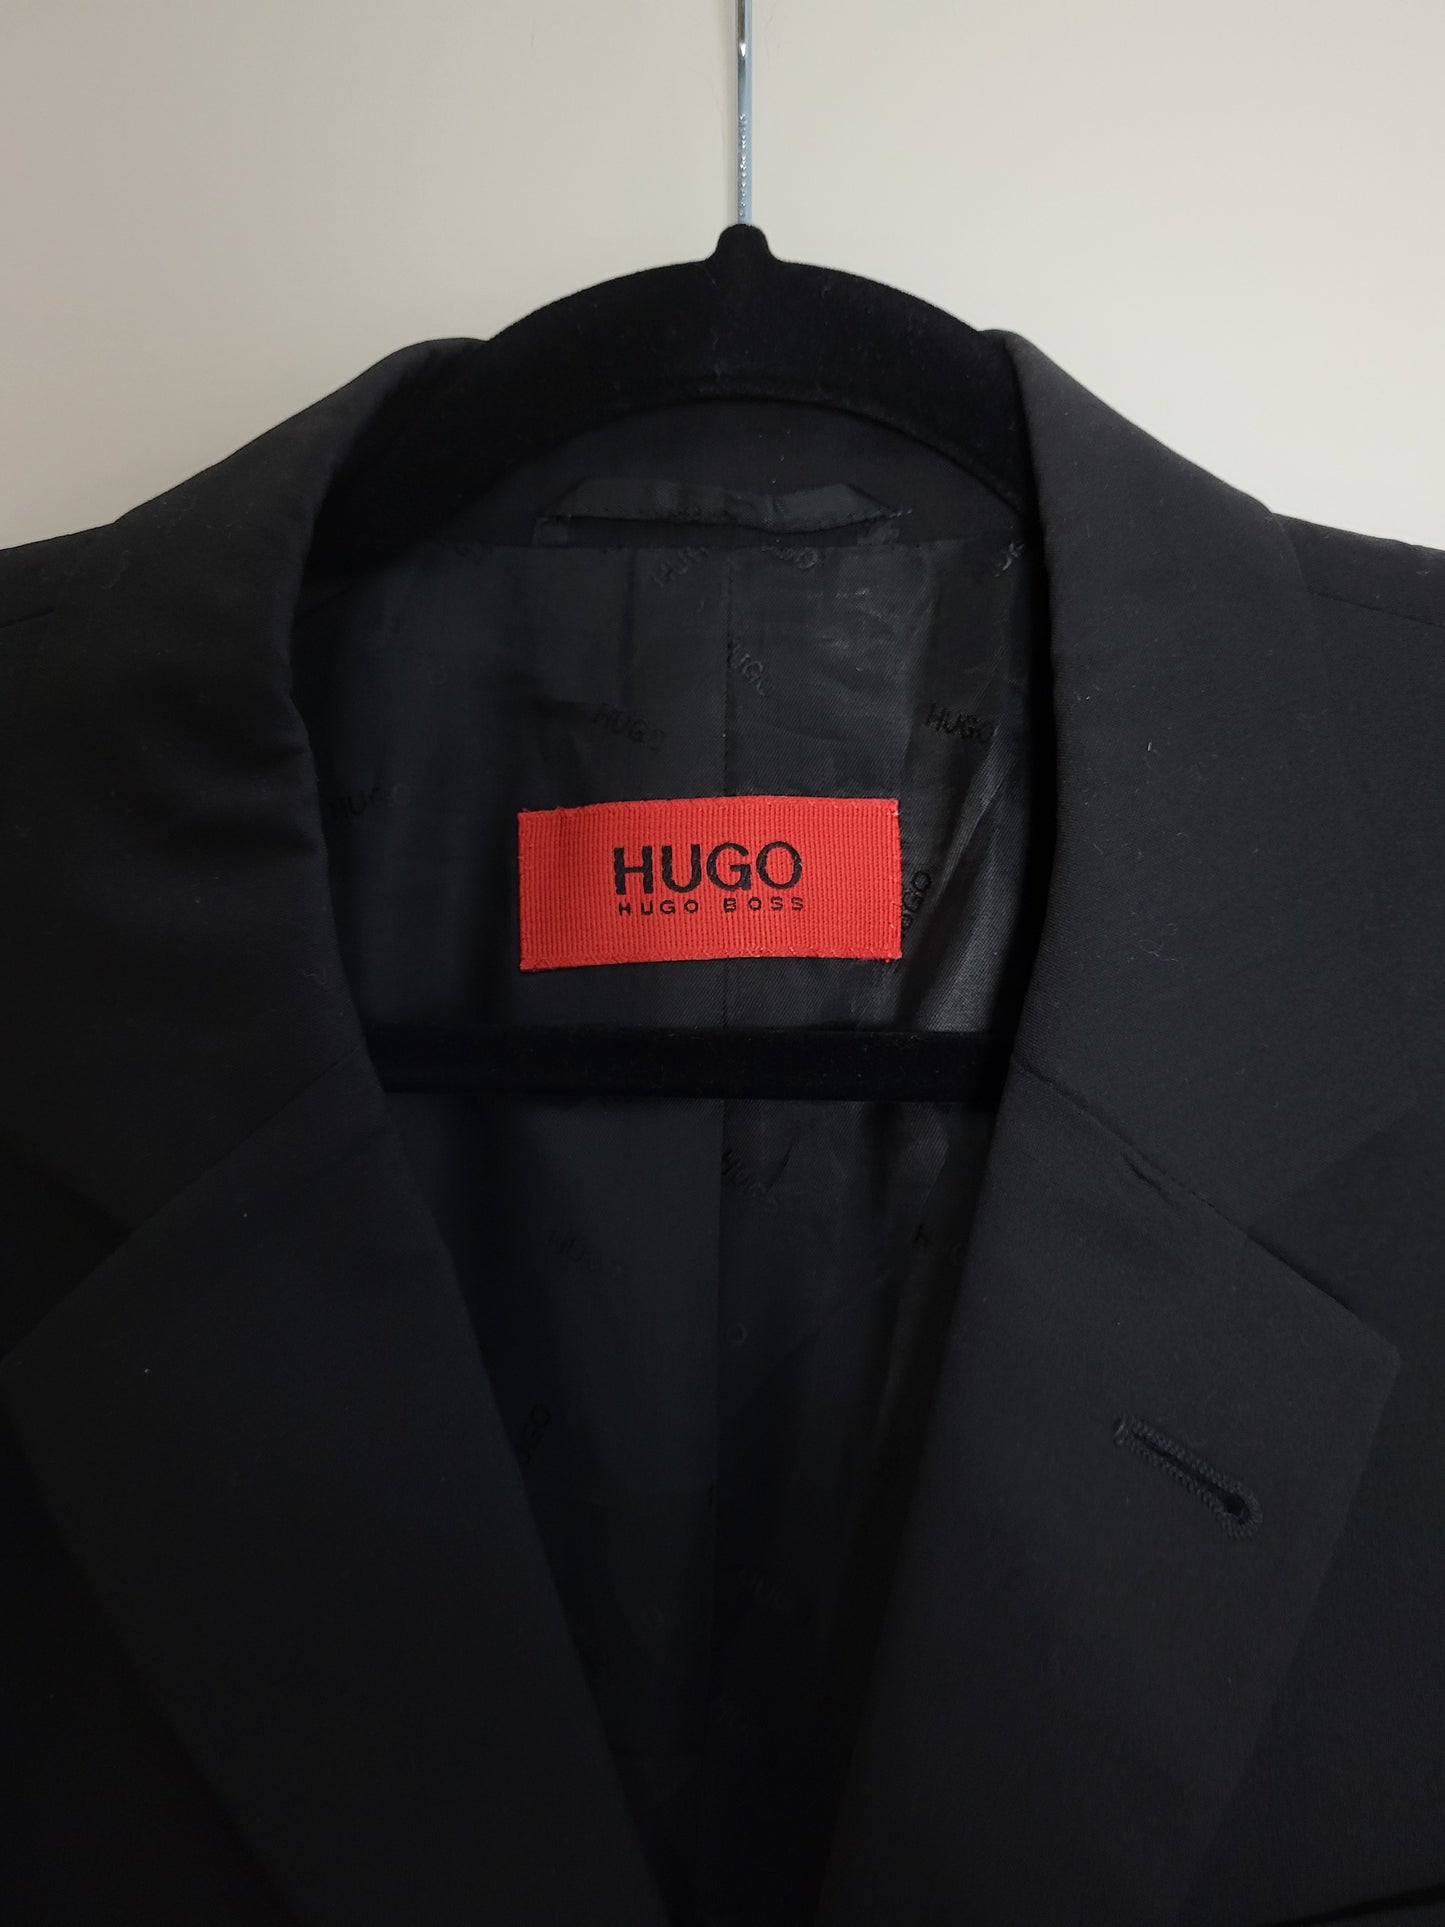 HUGO BOSS - Sakko - Klassisch - Schwarz - Herren - XL